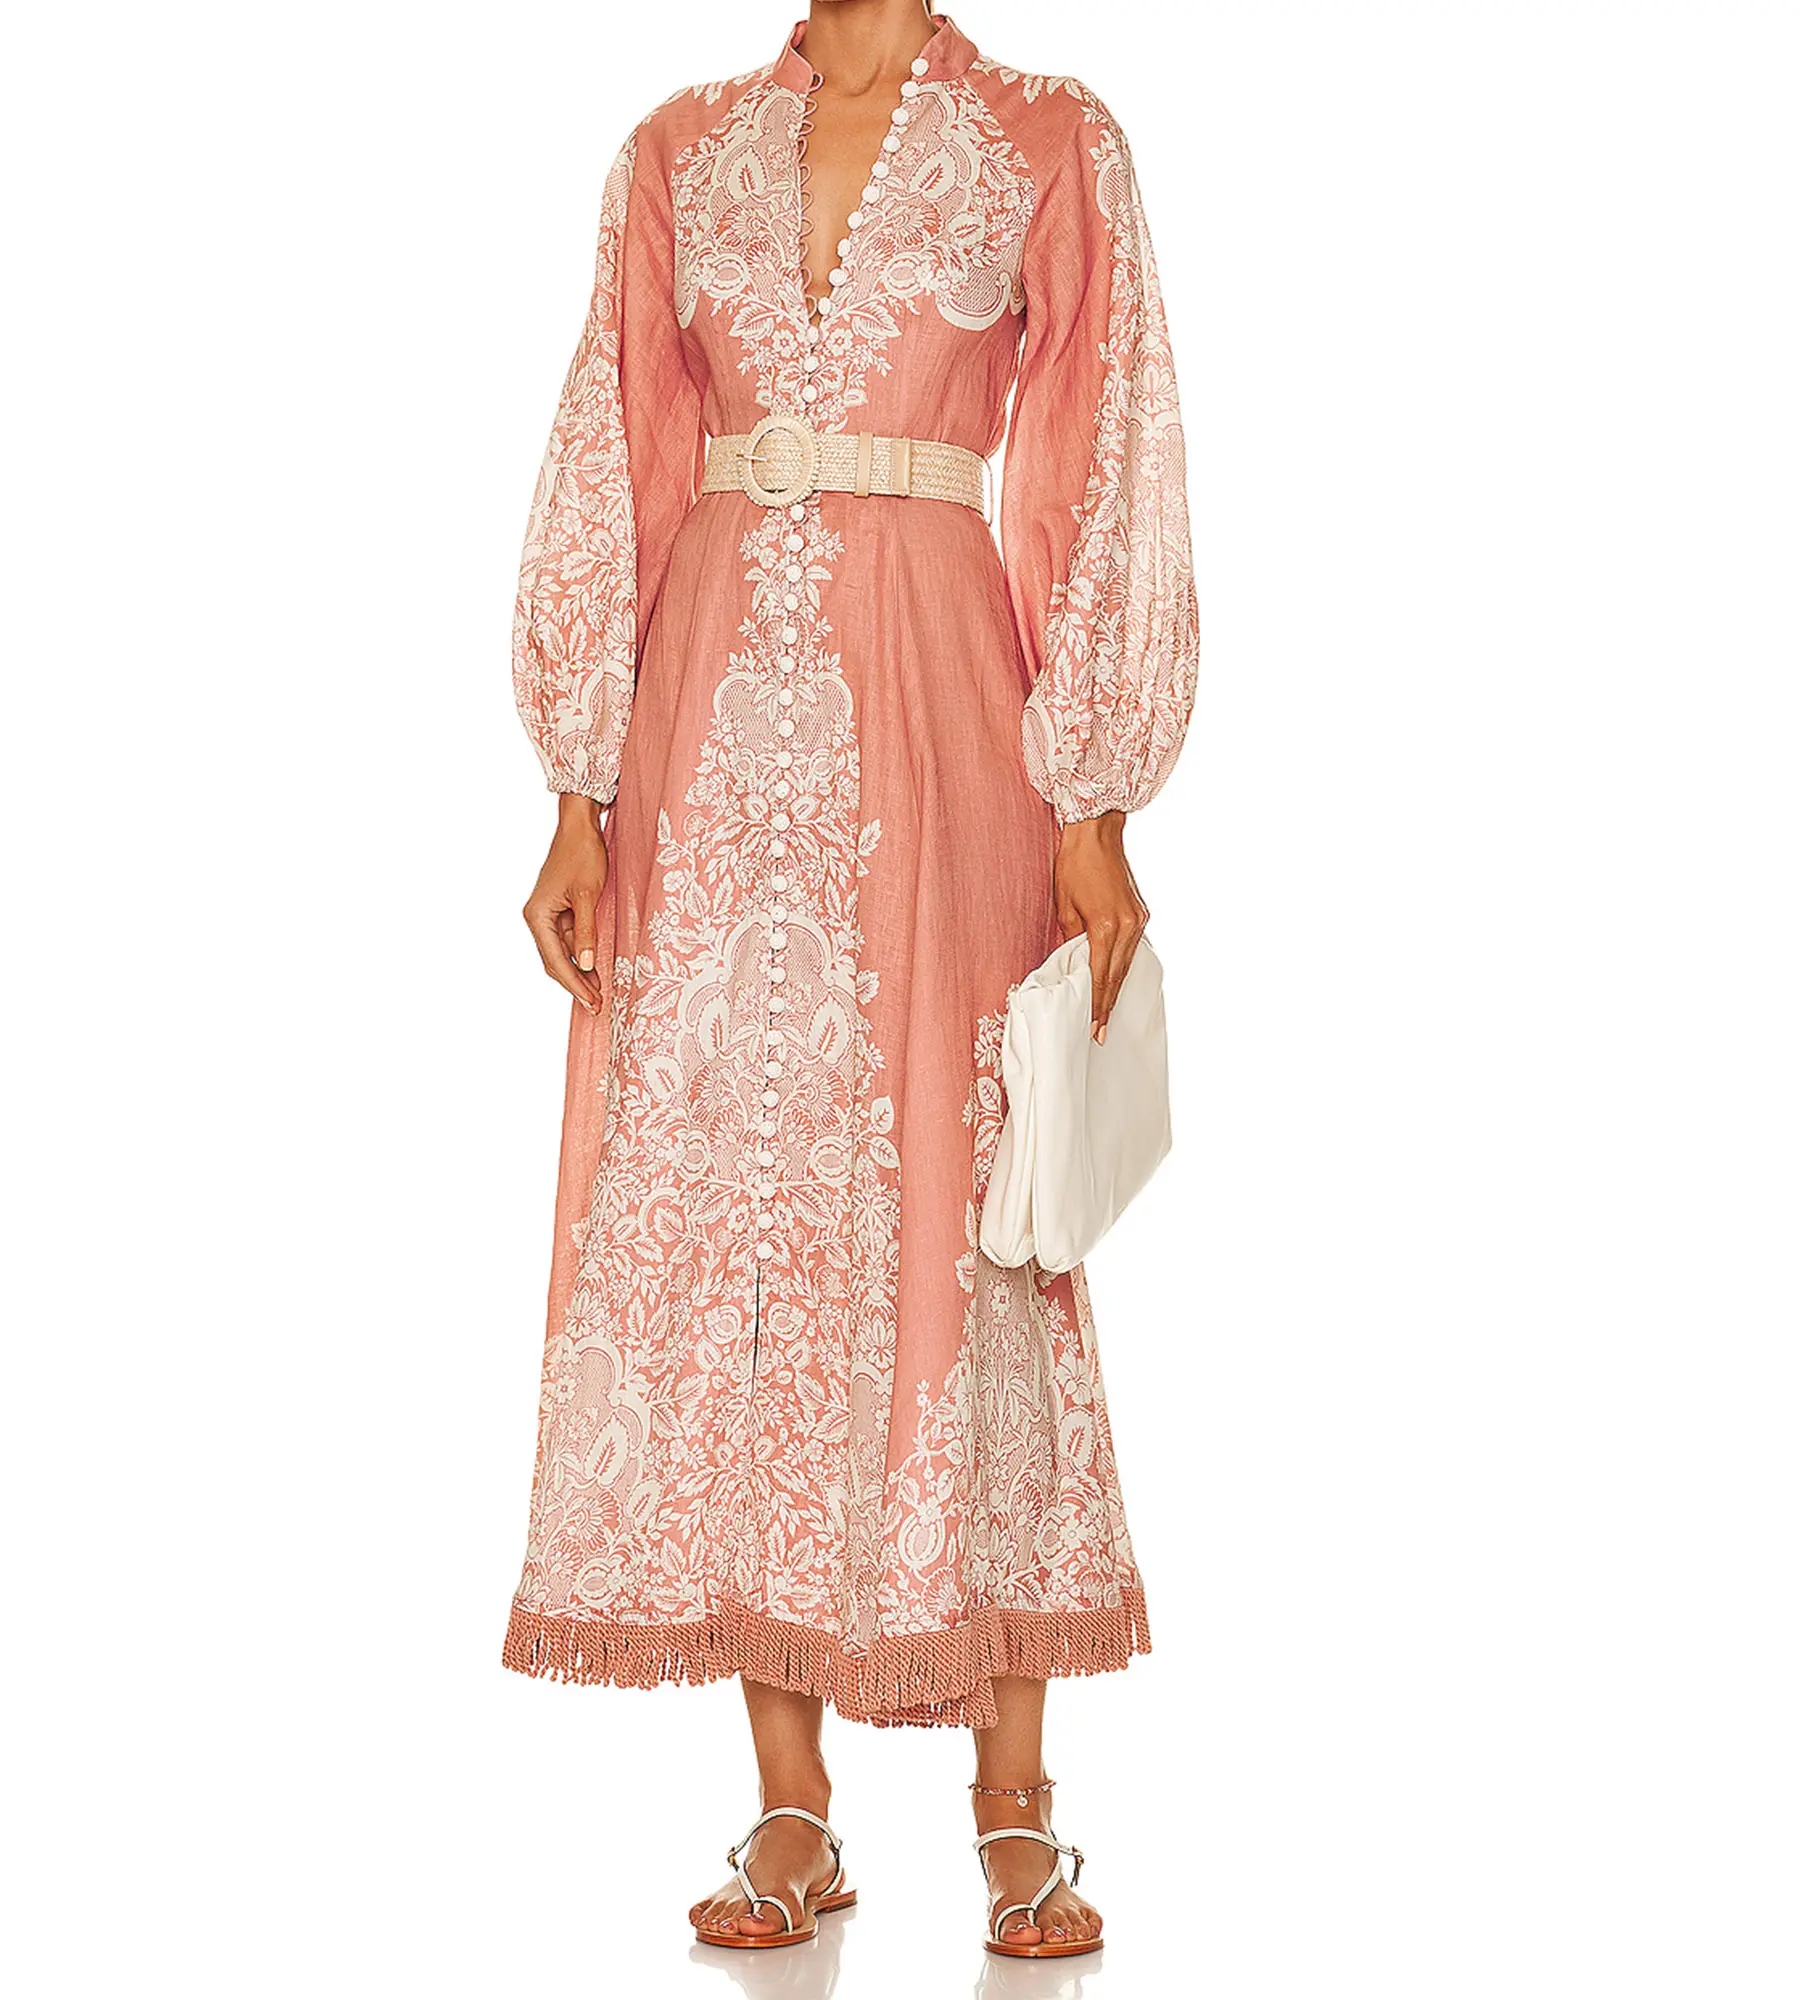 लोकप्रिय फैशन विंटेज एथिक शैली छुट्टी कपड़े महिलाओं पुष्प प्रिंट मैक्सी लंबी पोशाक तुर्की इस्लामी कपड़े